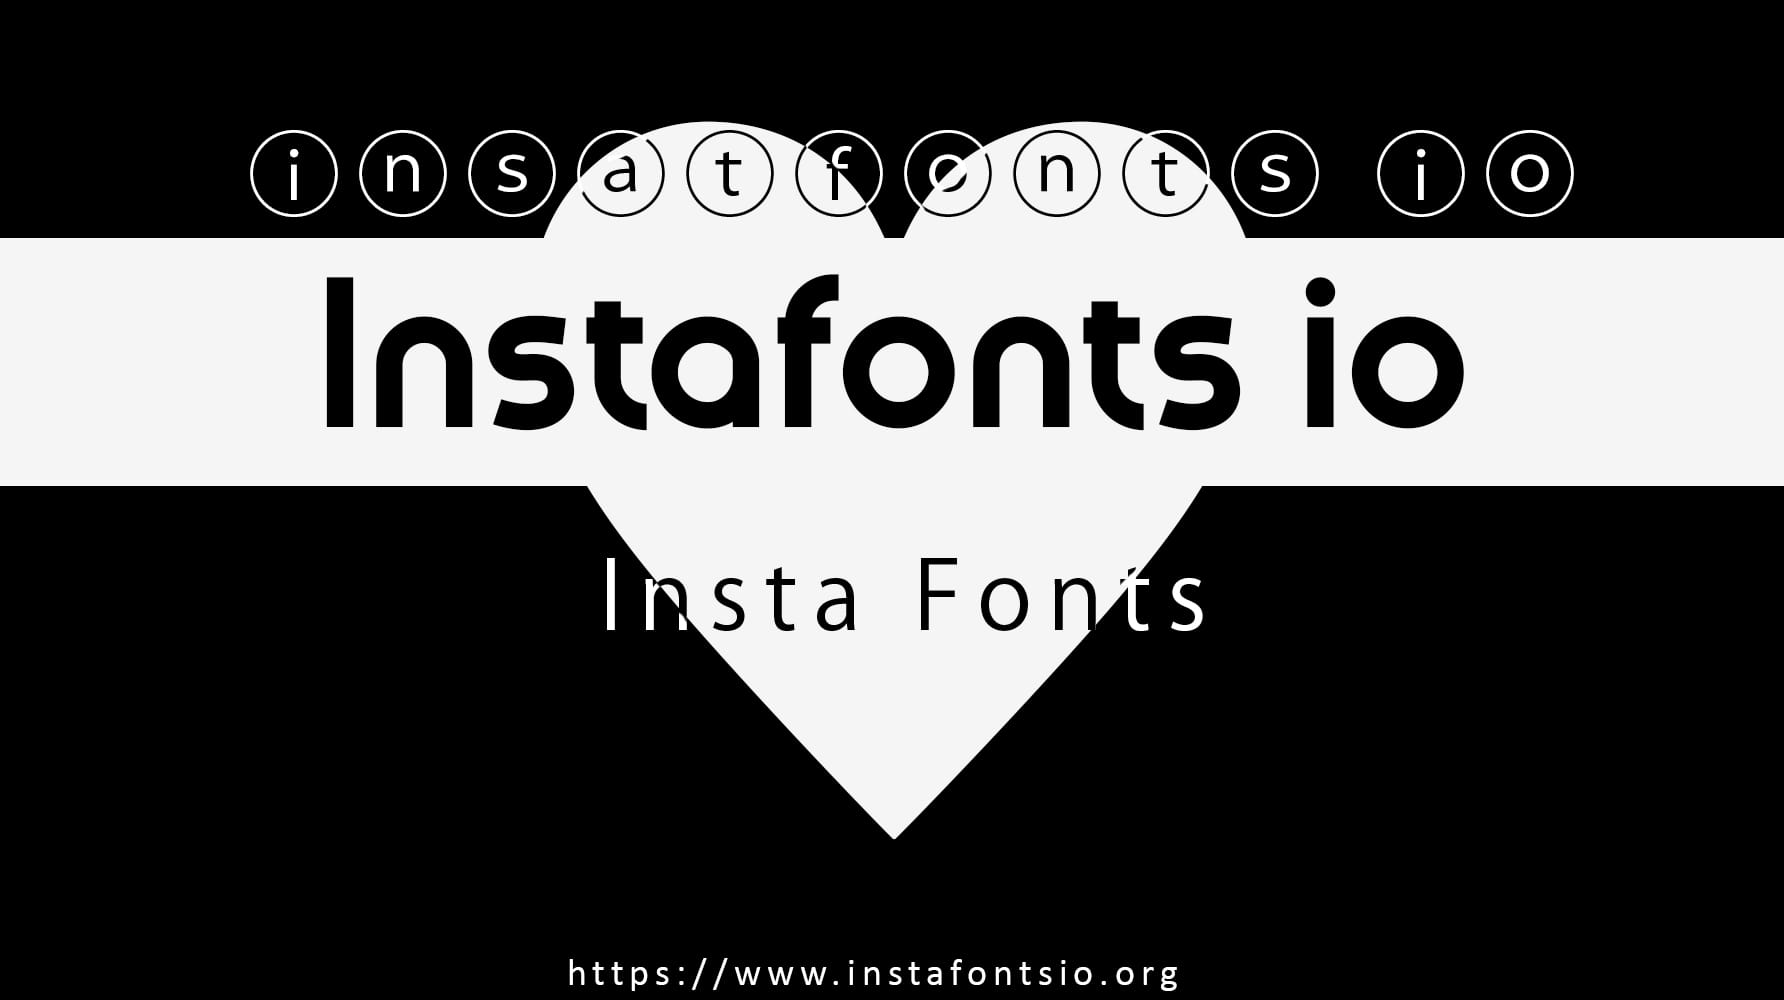 Với Instafonts, bạn có thể thêm nhiều phông chữ đa dạng vào các bài đăng của mình trên Instagram. Sử dụng các font chữ đặc biệt này sẽ giúp bài đăng của bạn trở nên bắt mắt và dễ thu hút người xem hơn. Hãy xem hình ảnh để tìm hiểu thêm về cách thức sử dụng Instafonts.